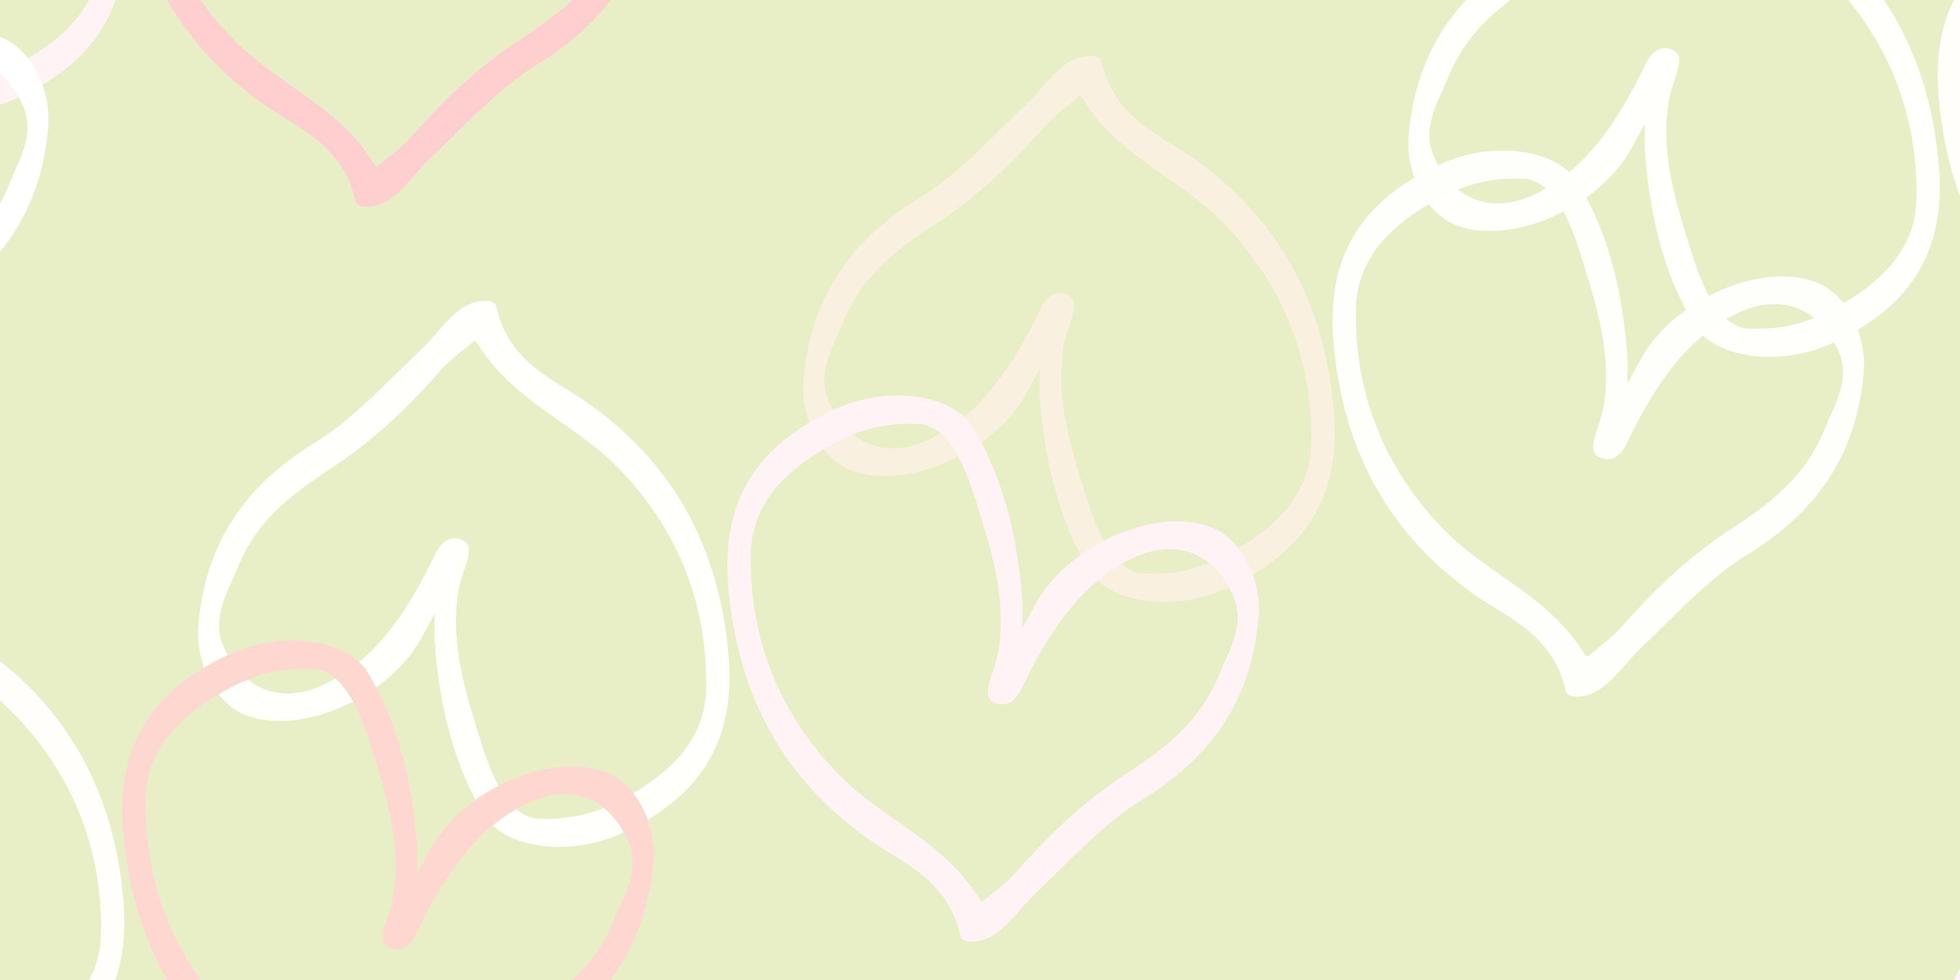 ljusrosa, gröna vektormall med doodle hjärtan. vektor